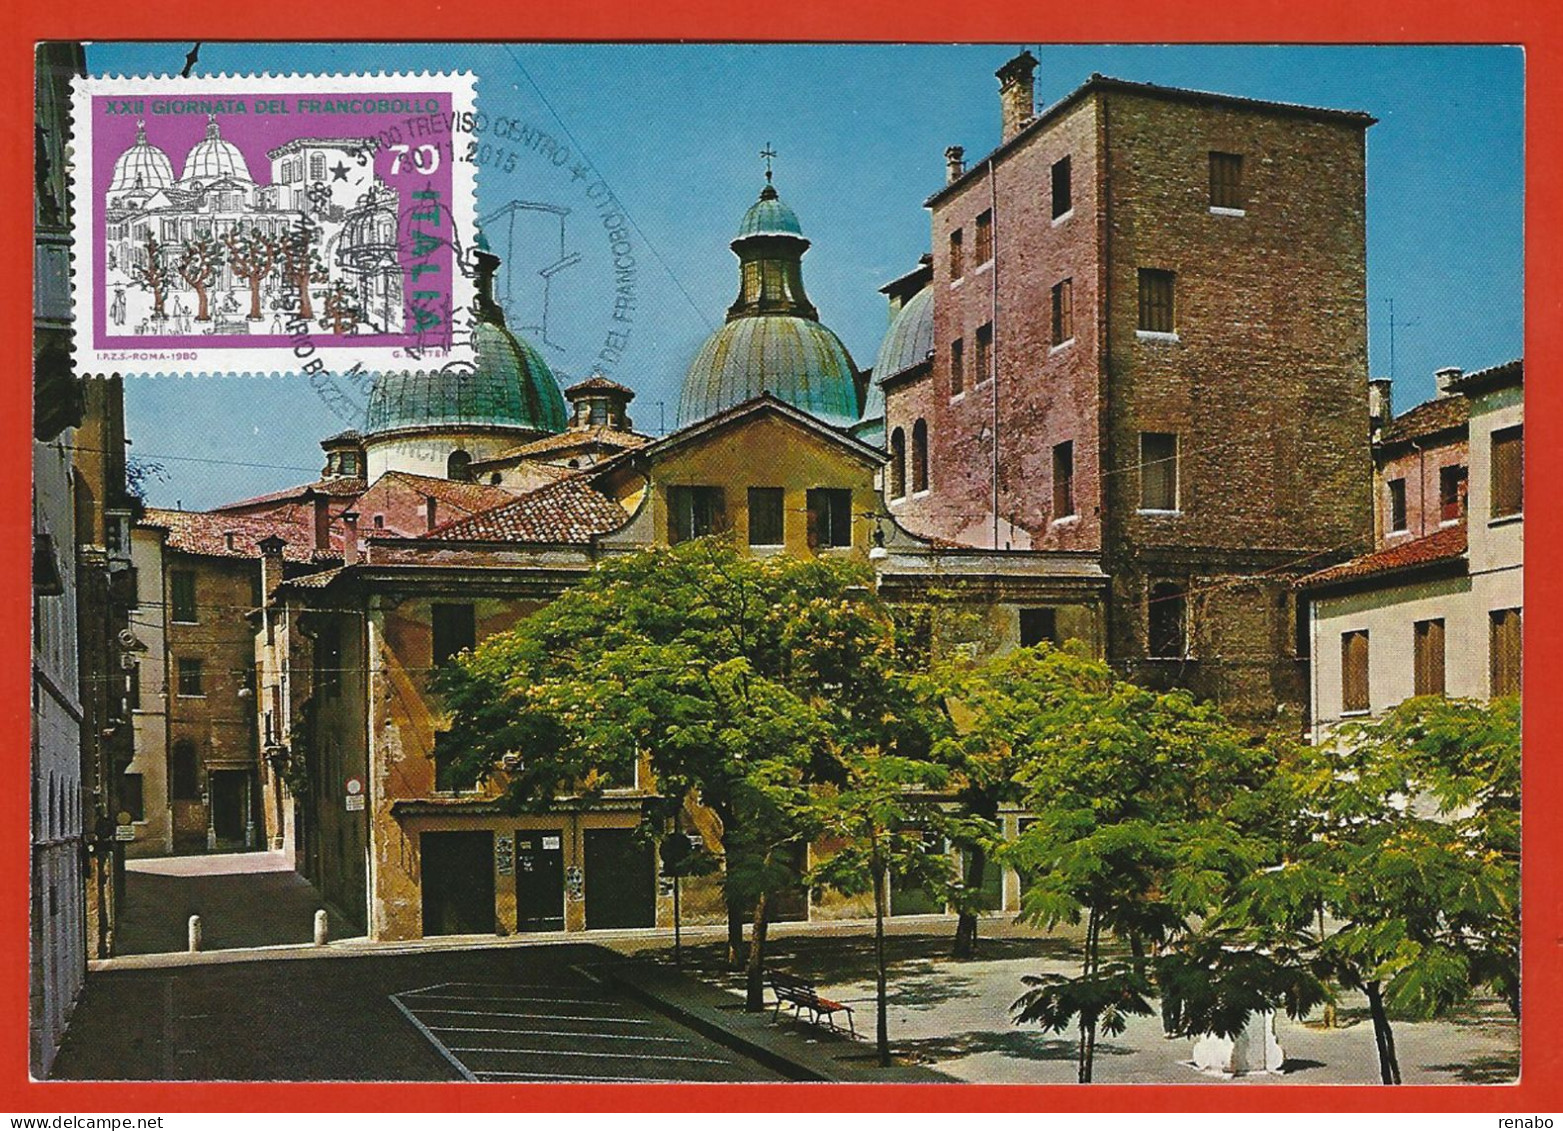 Italia 2015; Maximum Card, Piazza Pola A Treviso In: Giornata Francobollo 1980, In Cartolina, Annullo Speciale. - Maximum Cards